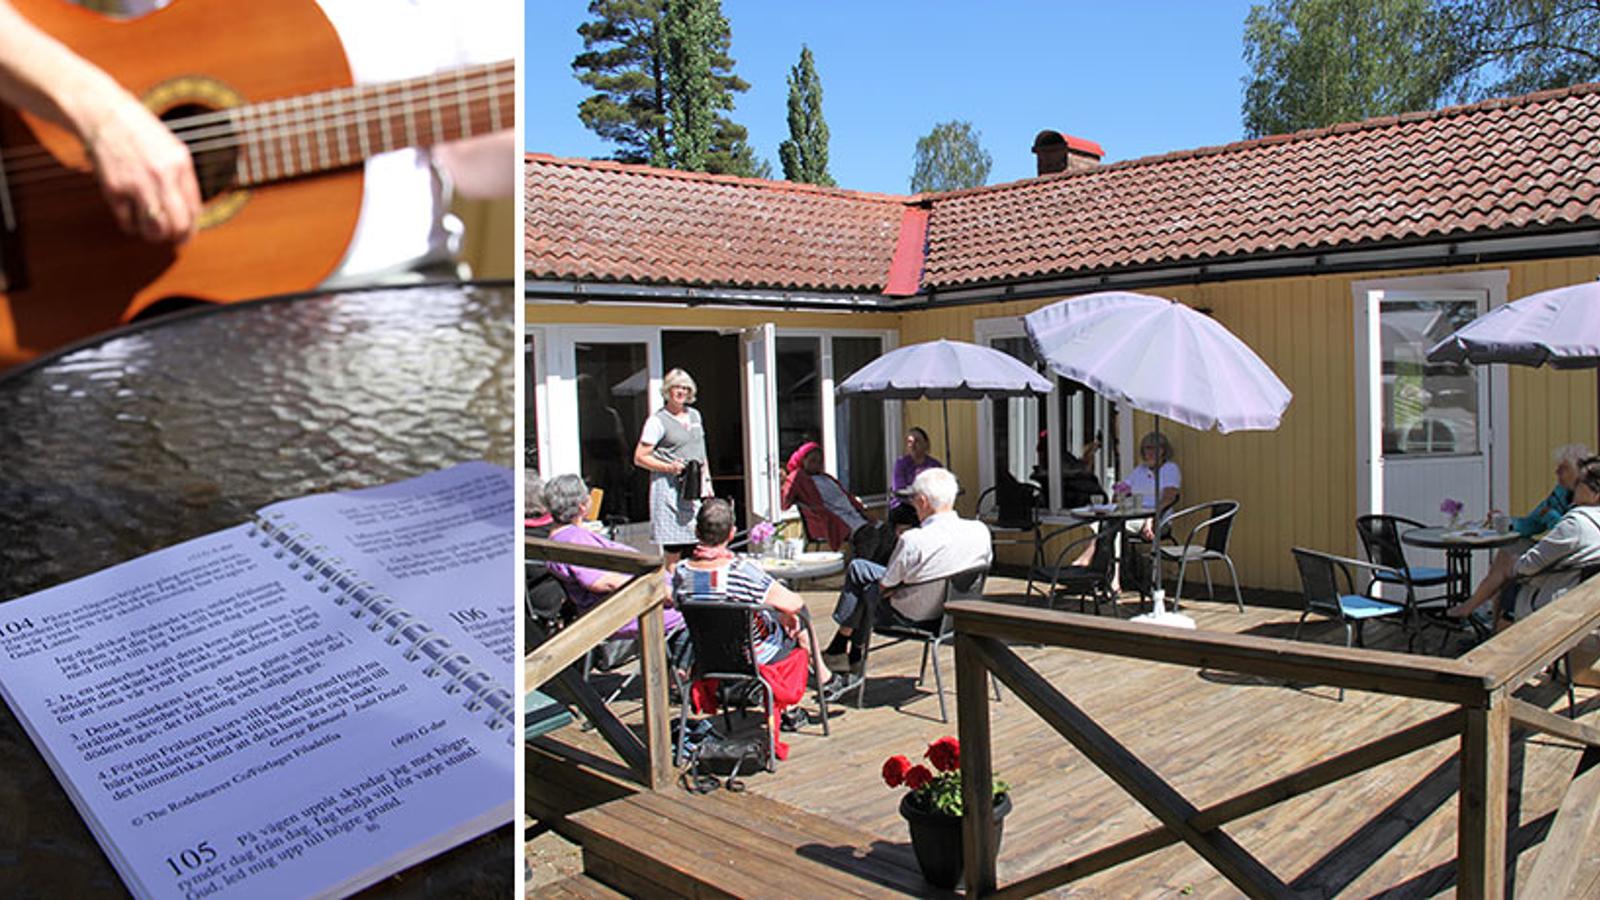 Till vänster: Ett sånghäfte. Till höger: Kafé vid sommarhemmet. Pensionärer sitter runt bord i solen och fikar.